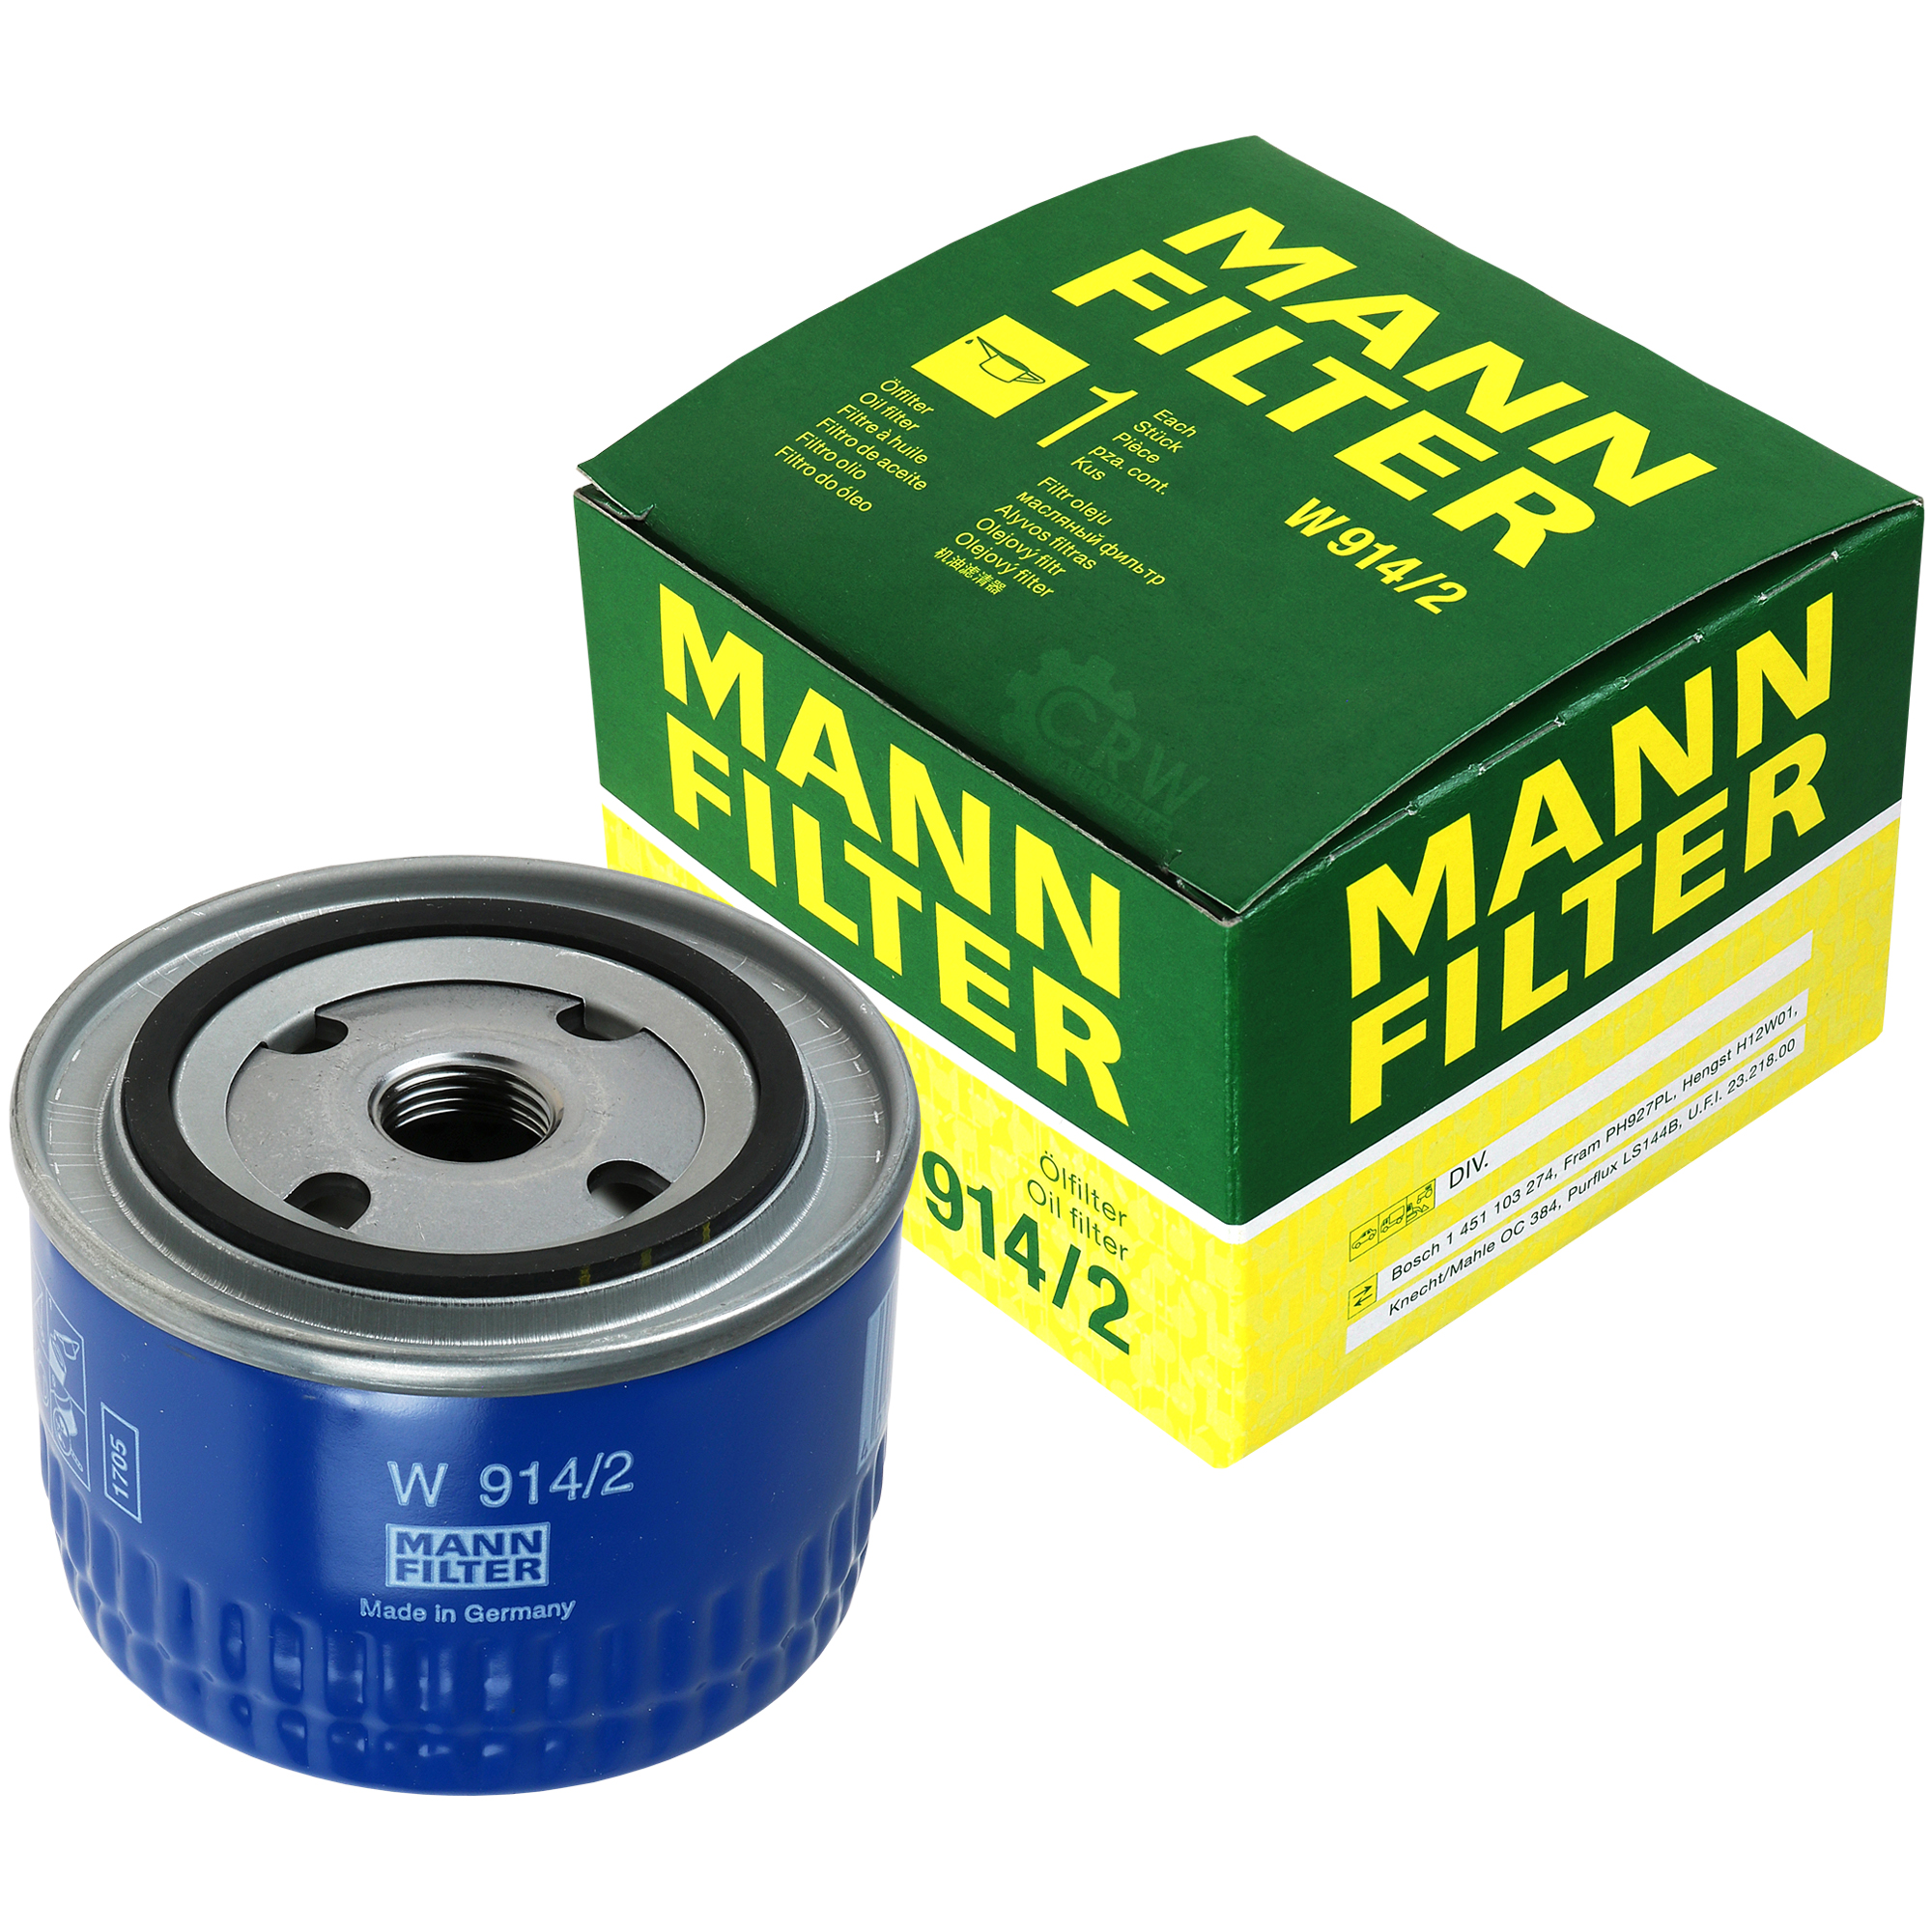 MANN-FILTER Ölfilter W 914/2 Oil Filter